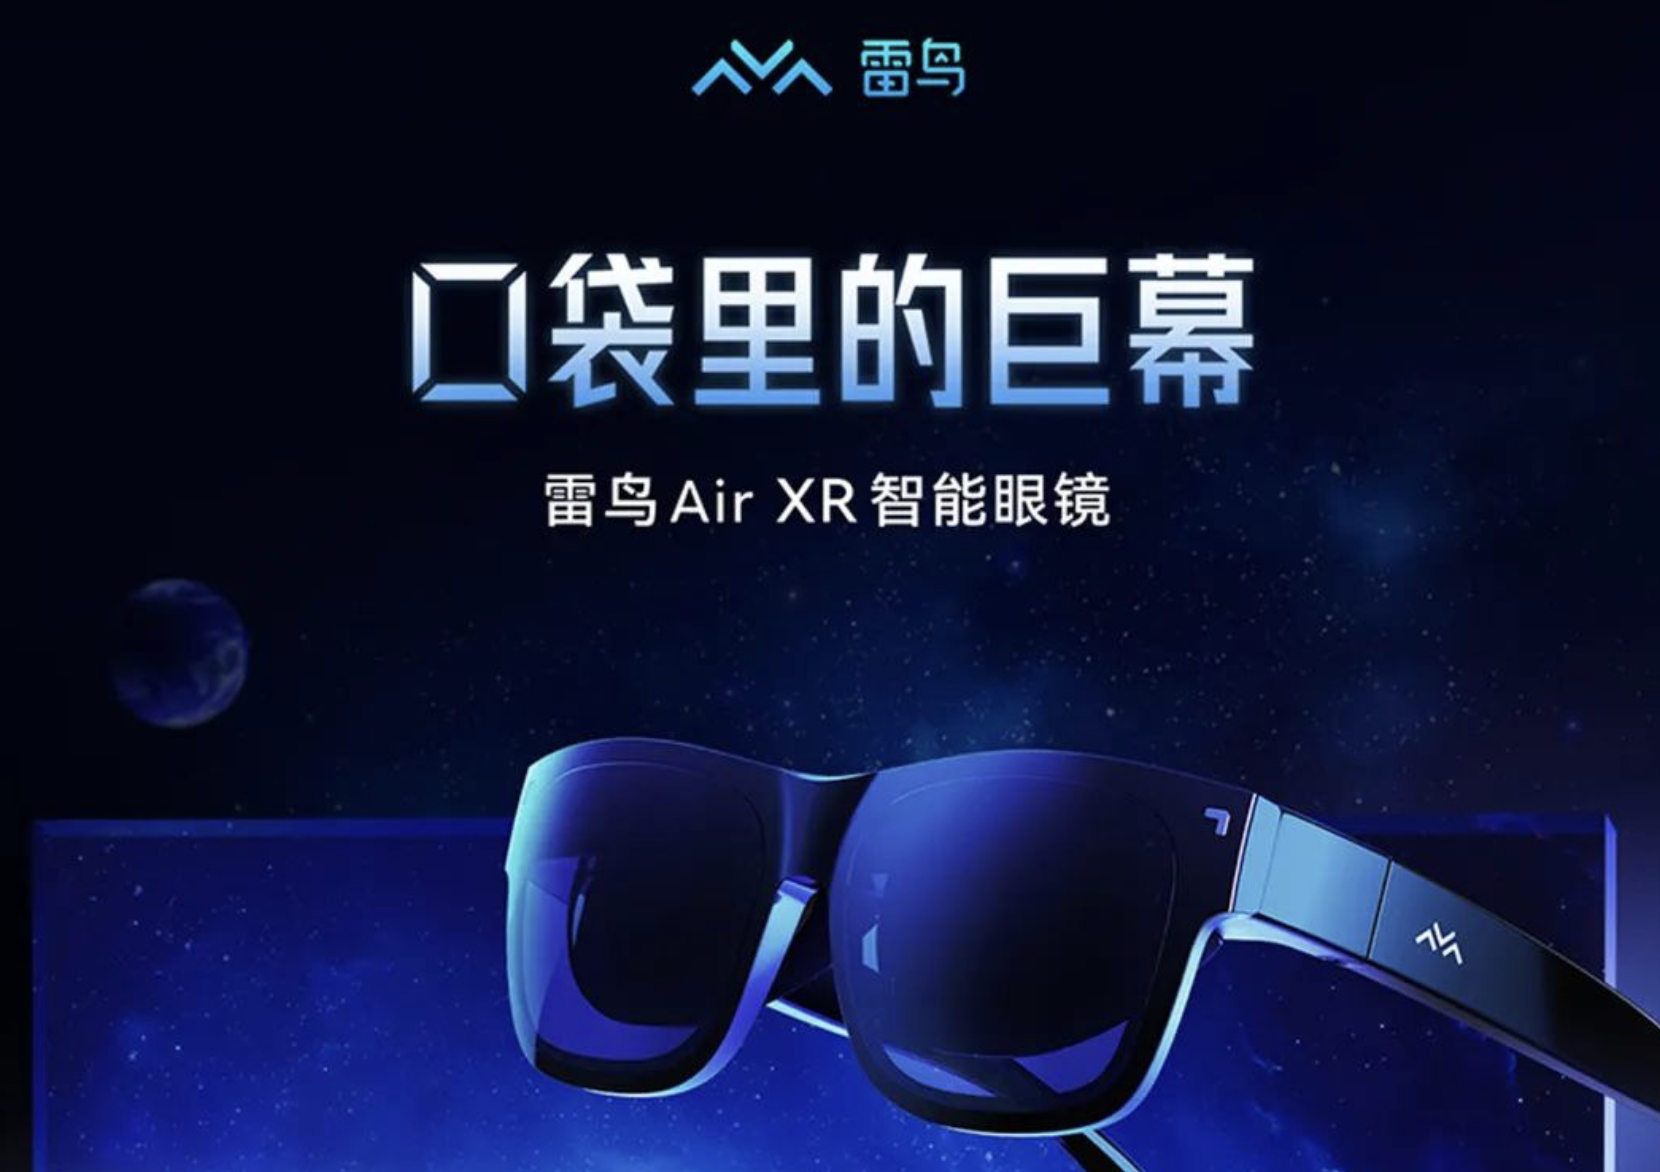 雷鸟 Air XR眼镜首发战报出炉 登上京东热销商品榜、新品